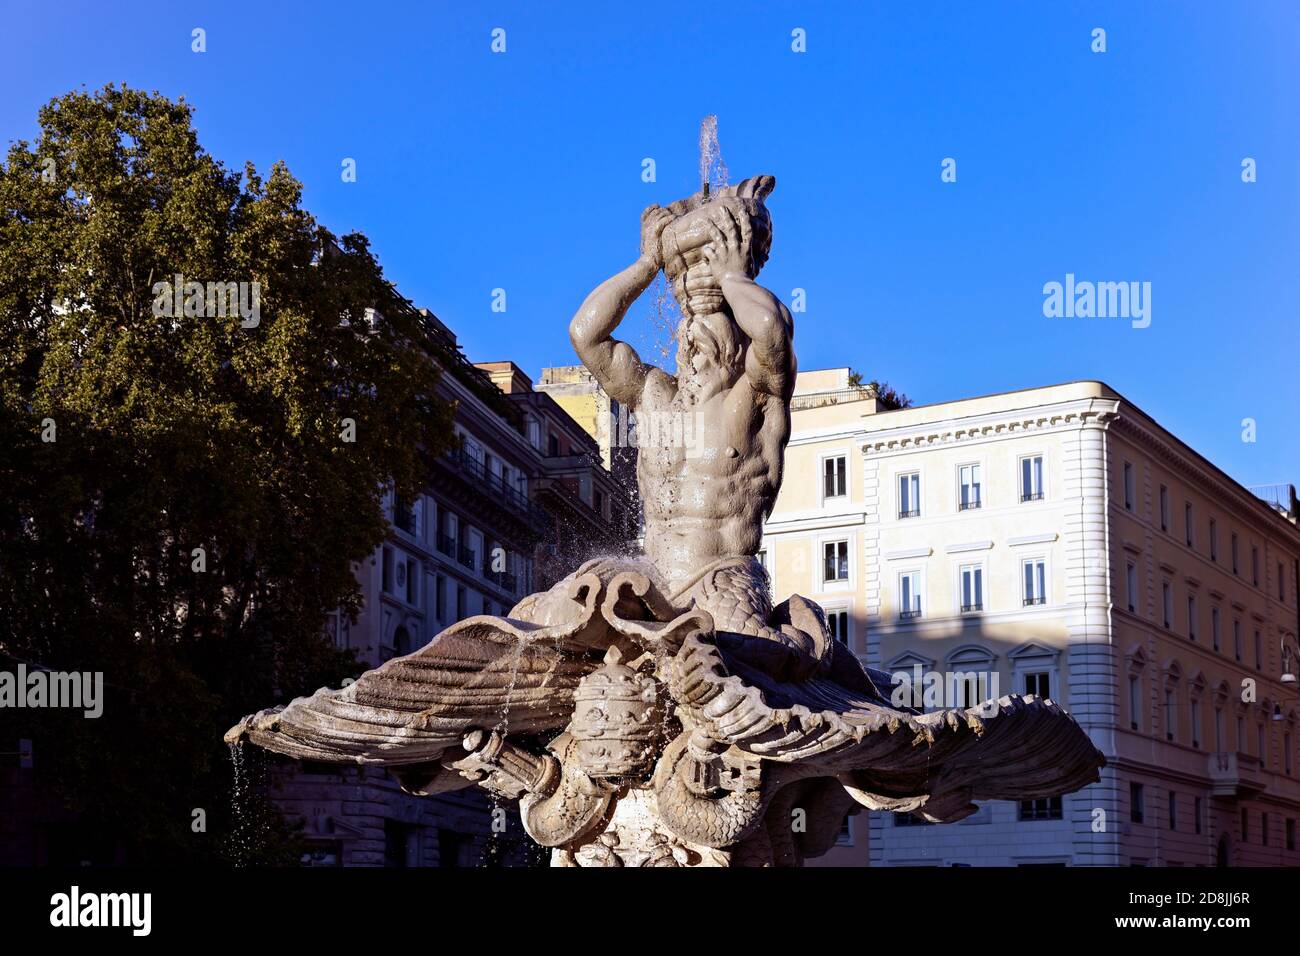 Triton-Brunnen, Meisterwerk des Barock von Bernini, Barberini-Platz, Altstadt von Rom, Italien, Europa. Klarer blauer Himmel, Kopierbereich. Stockfoto